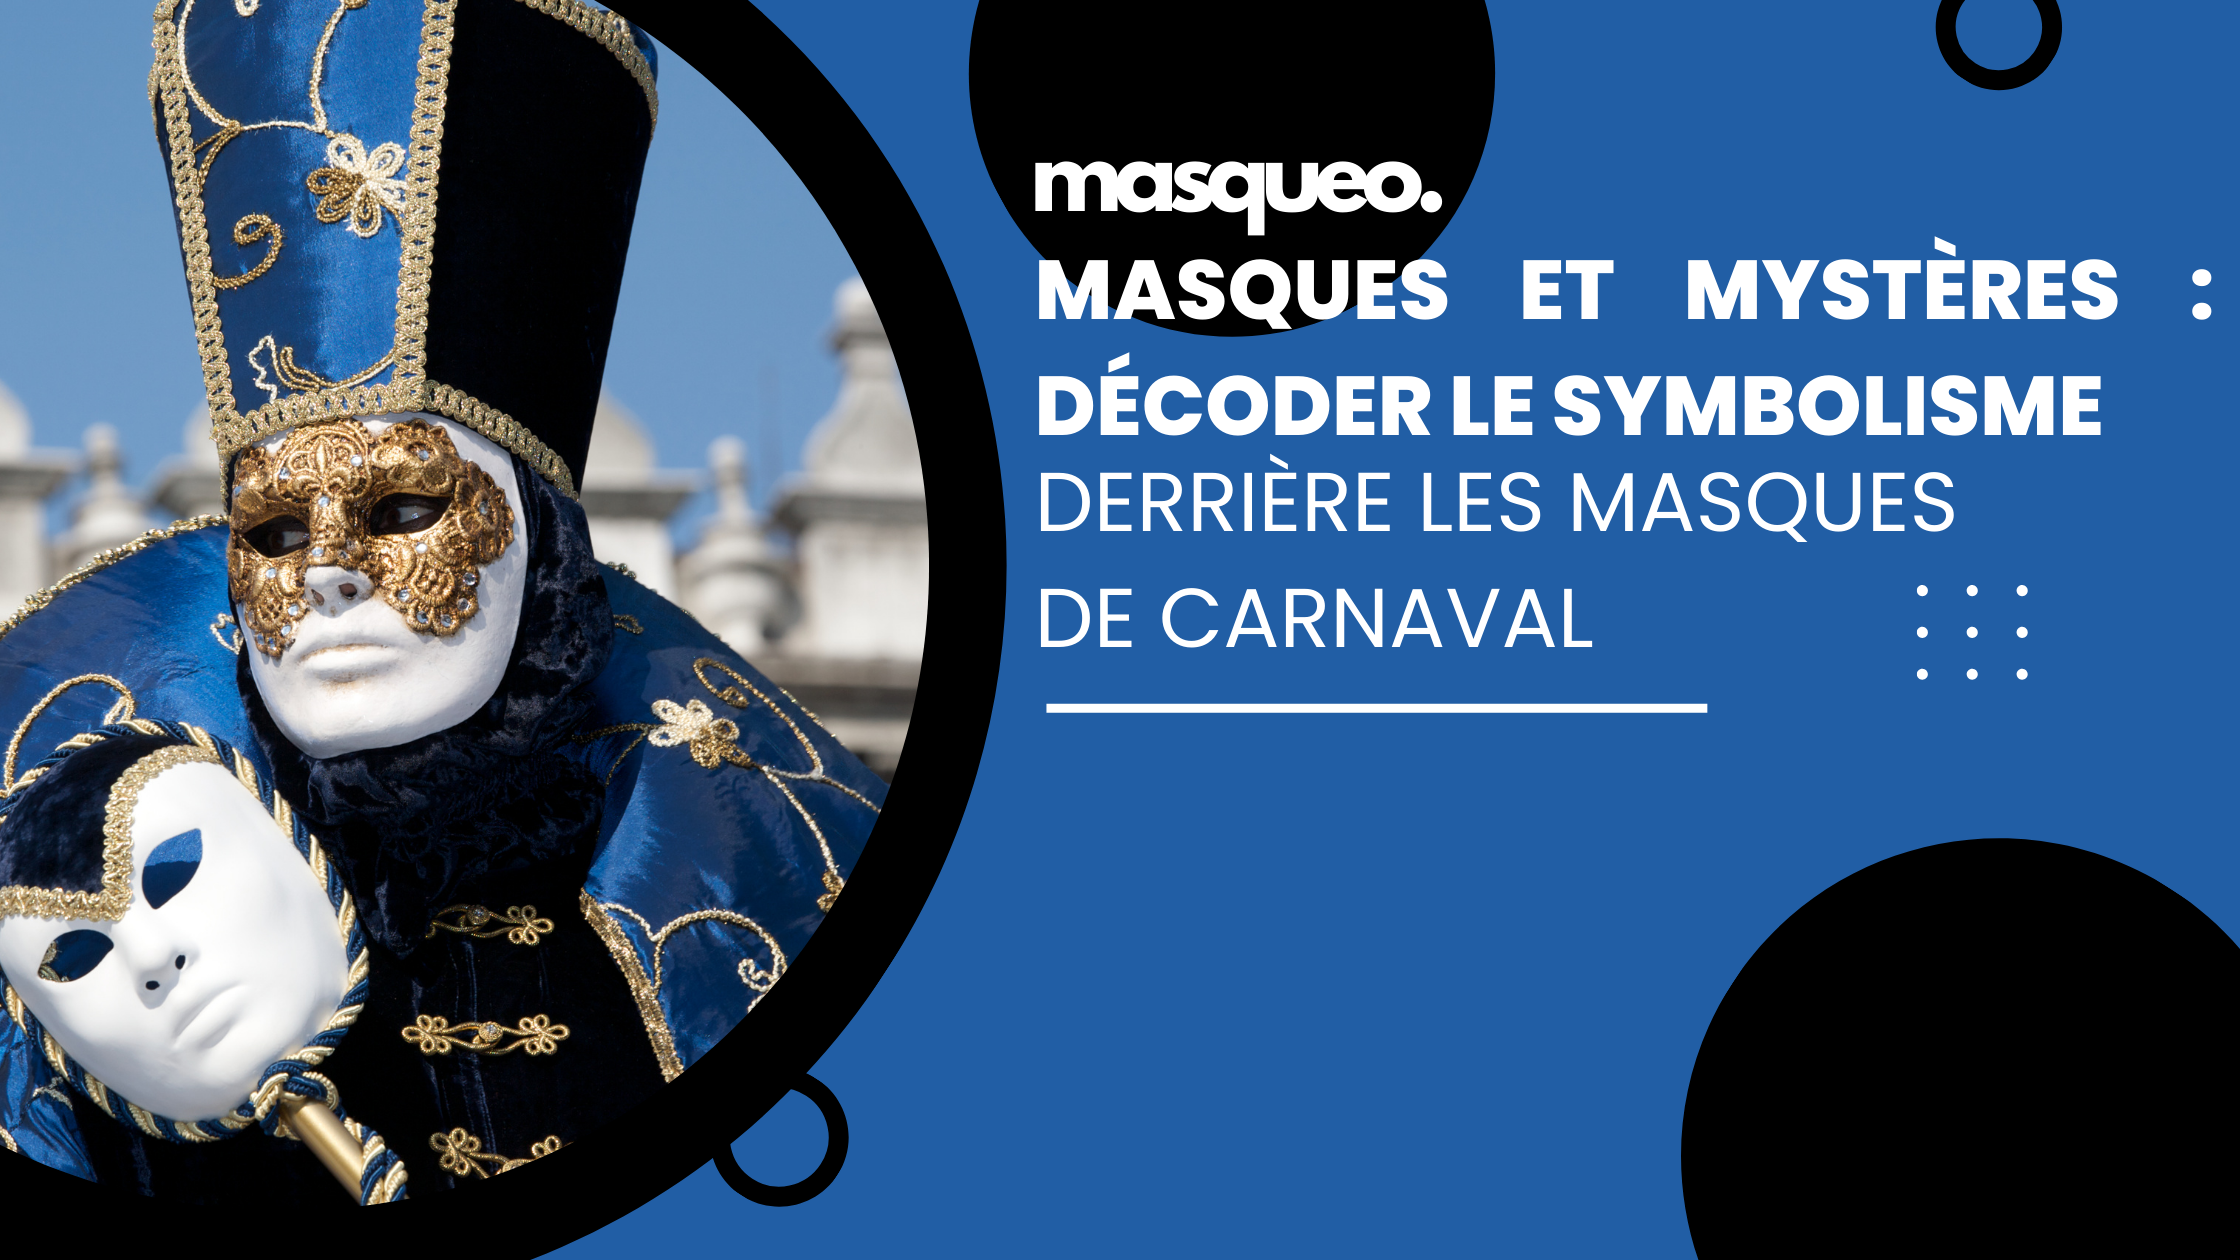 Masques et mystères : Décoder le symbolisme derrière les masques de carnaval